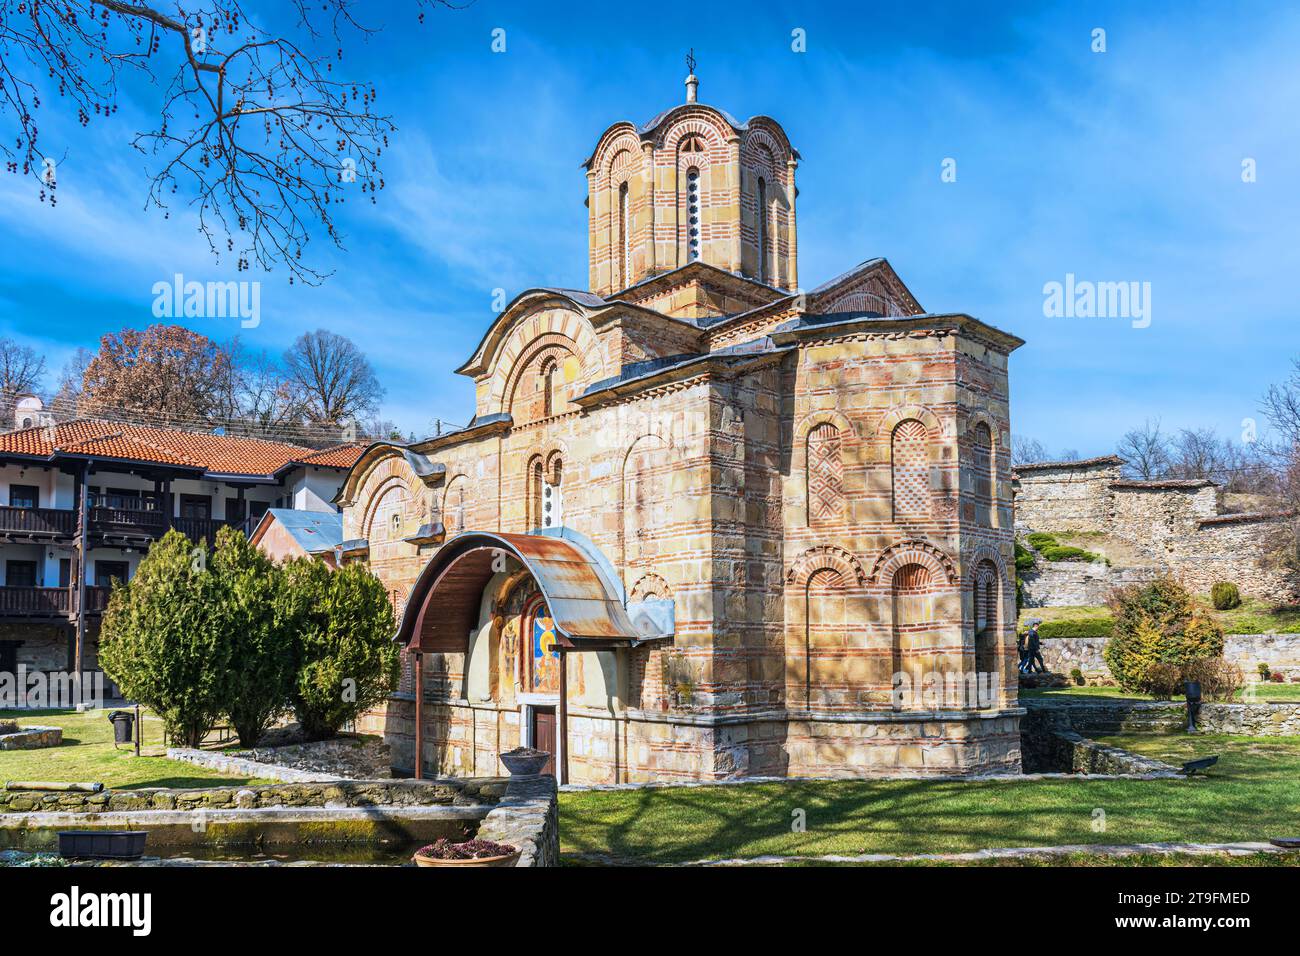 Le monastère de Marko est un monastère orthodoxe situé au sud du village de Markova Susica, le long de la vallée de la rivière Markova sur sa rive gauche. Banque D'Images